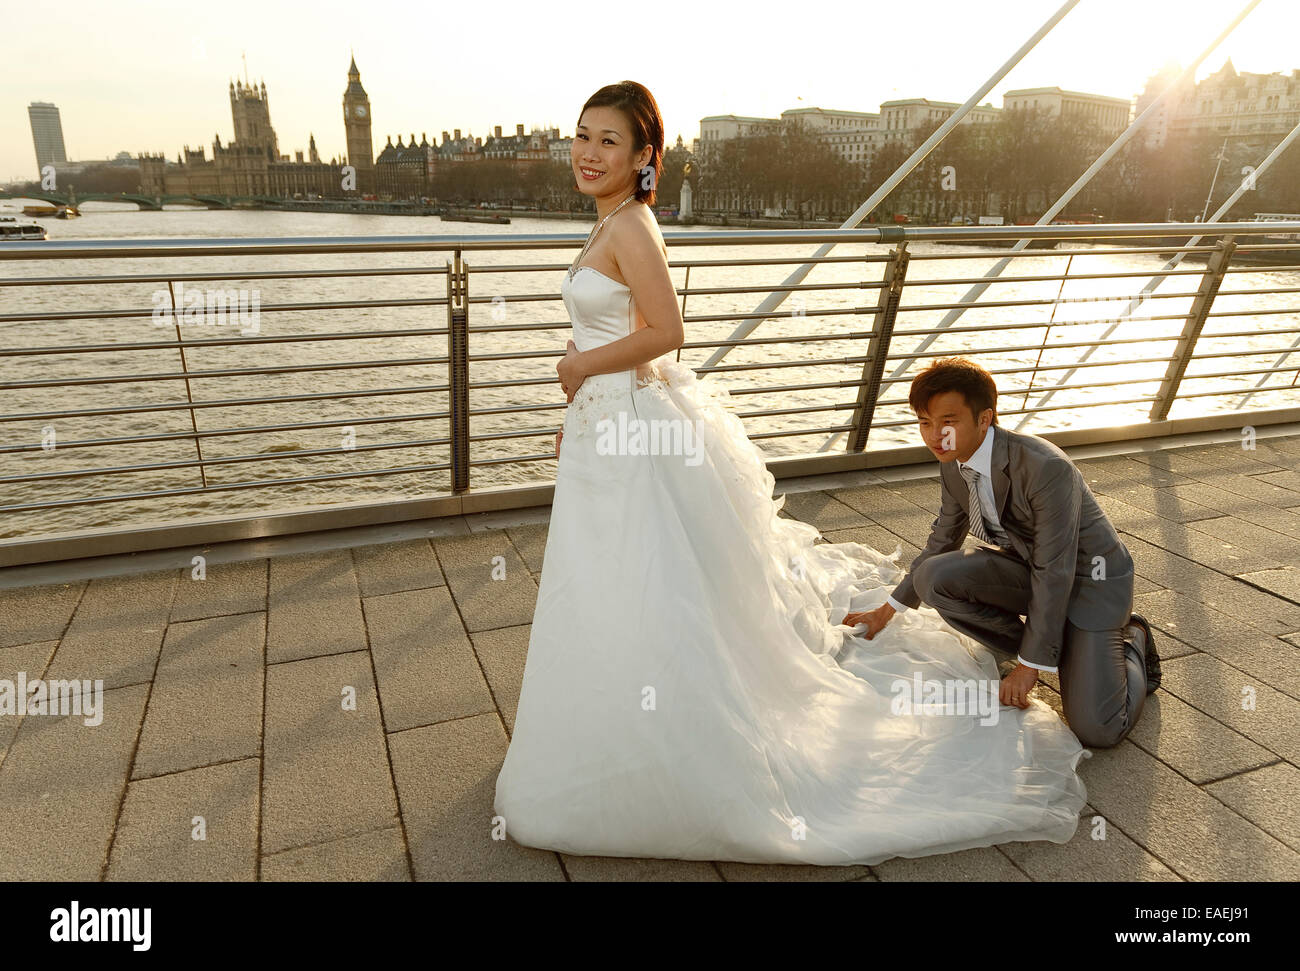 Eine asiatische Braut hat ihr Hochzeitskleid angeordnet nach ihrem Bräutigam vor Stadtbild von London und Westminster - Hintergrundbeleuchtung durch Sonne Stockfoto